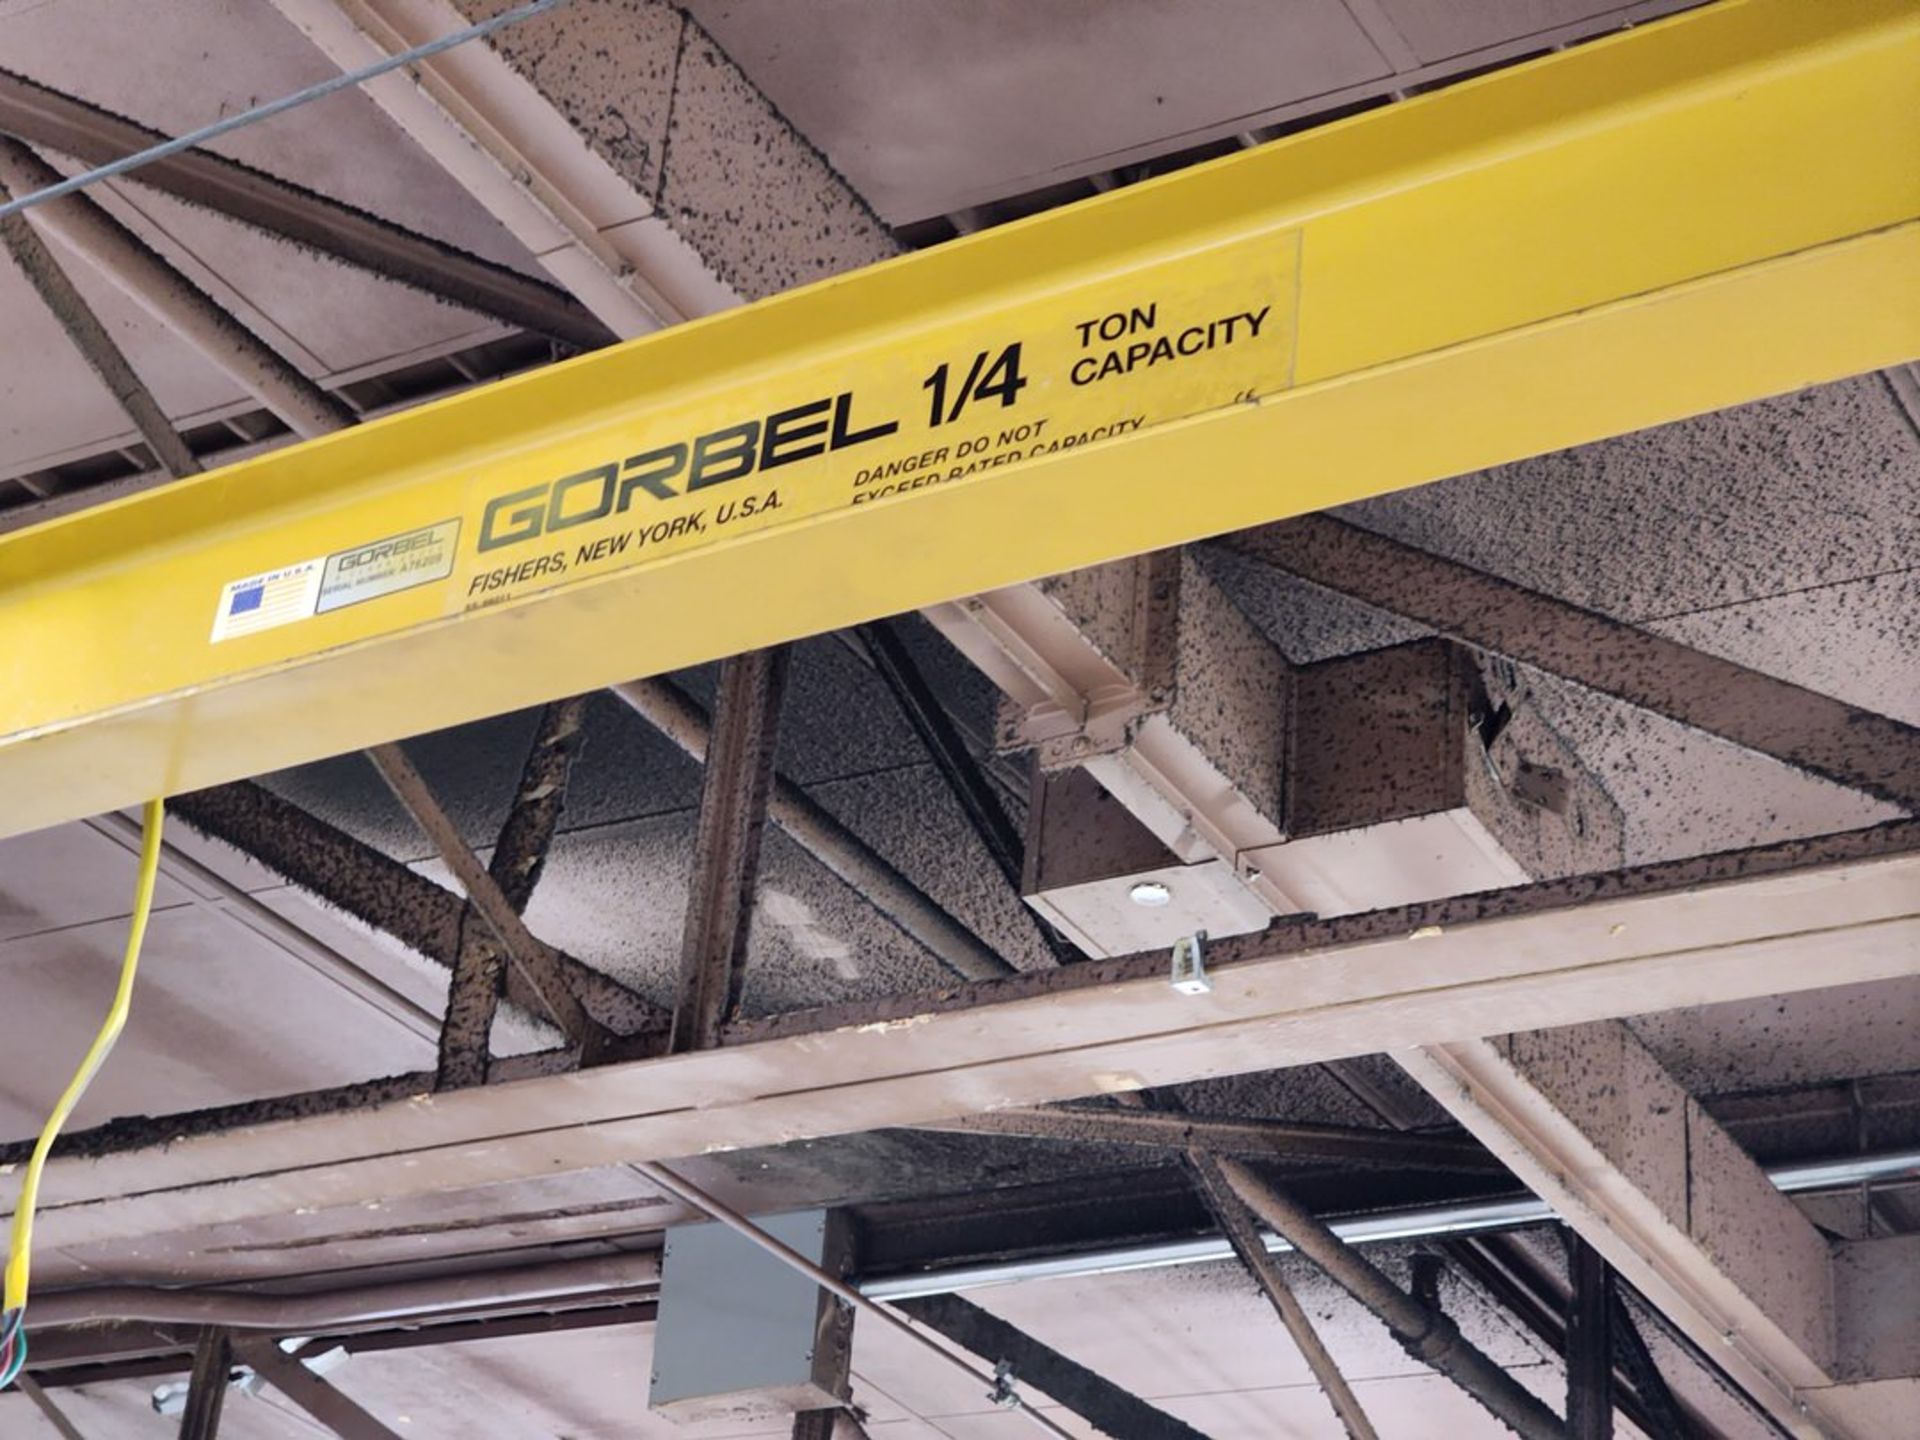 Gorbel 1/4 Ton Jib Crane 96"W x 108"H; W/ Safety Switch - Image 4 of 7